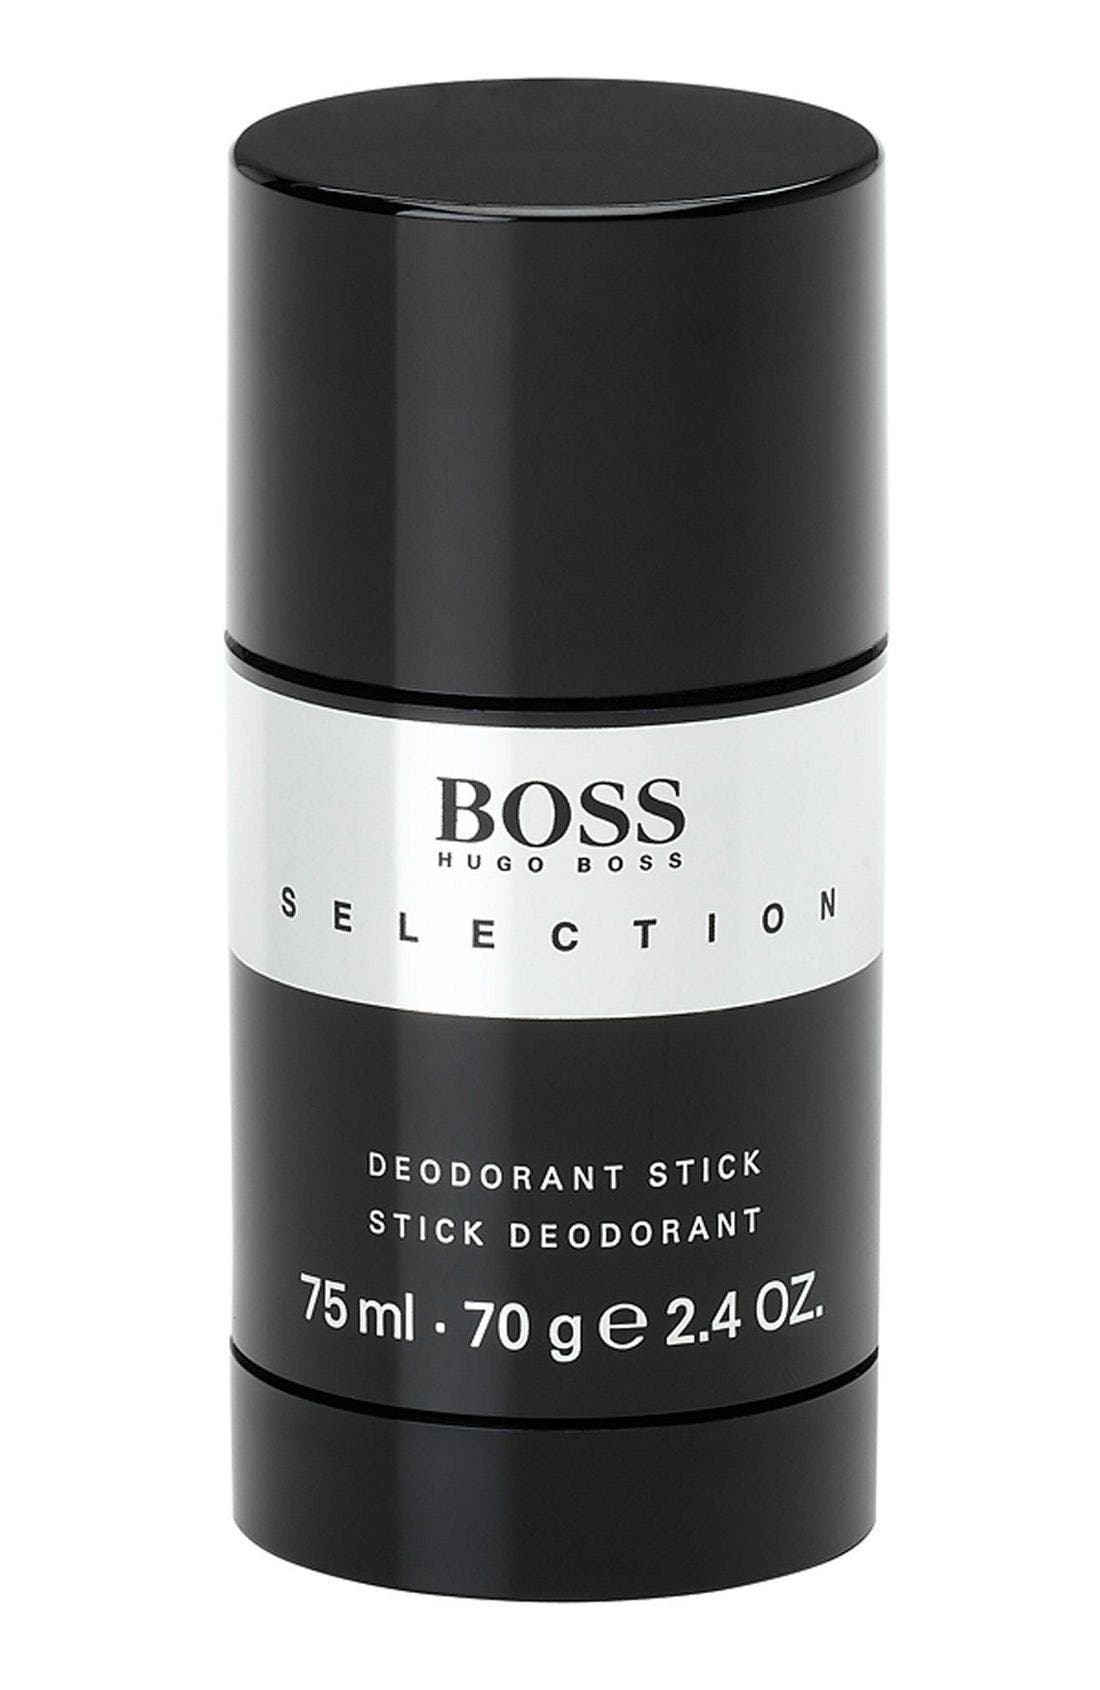 hugo boss deodorant stick review